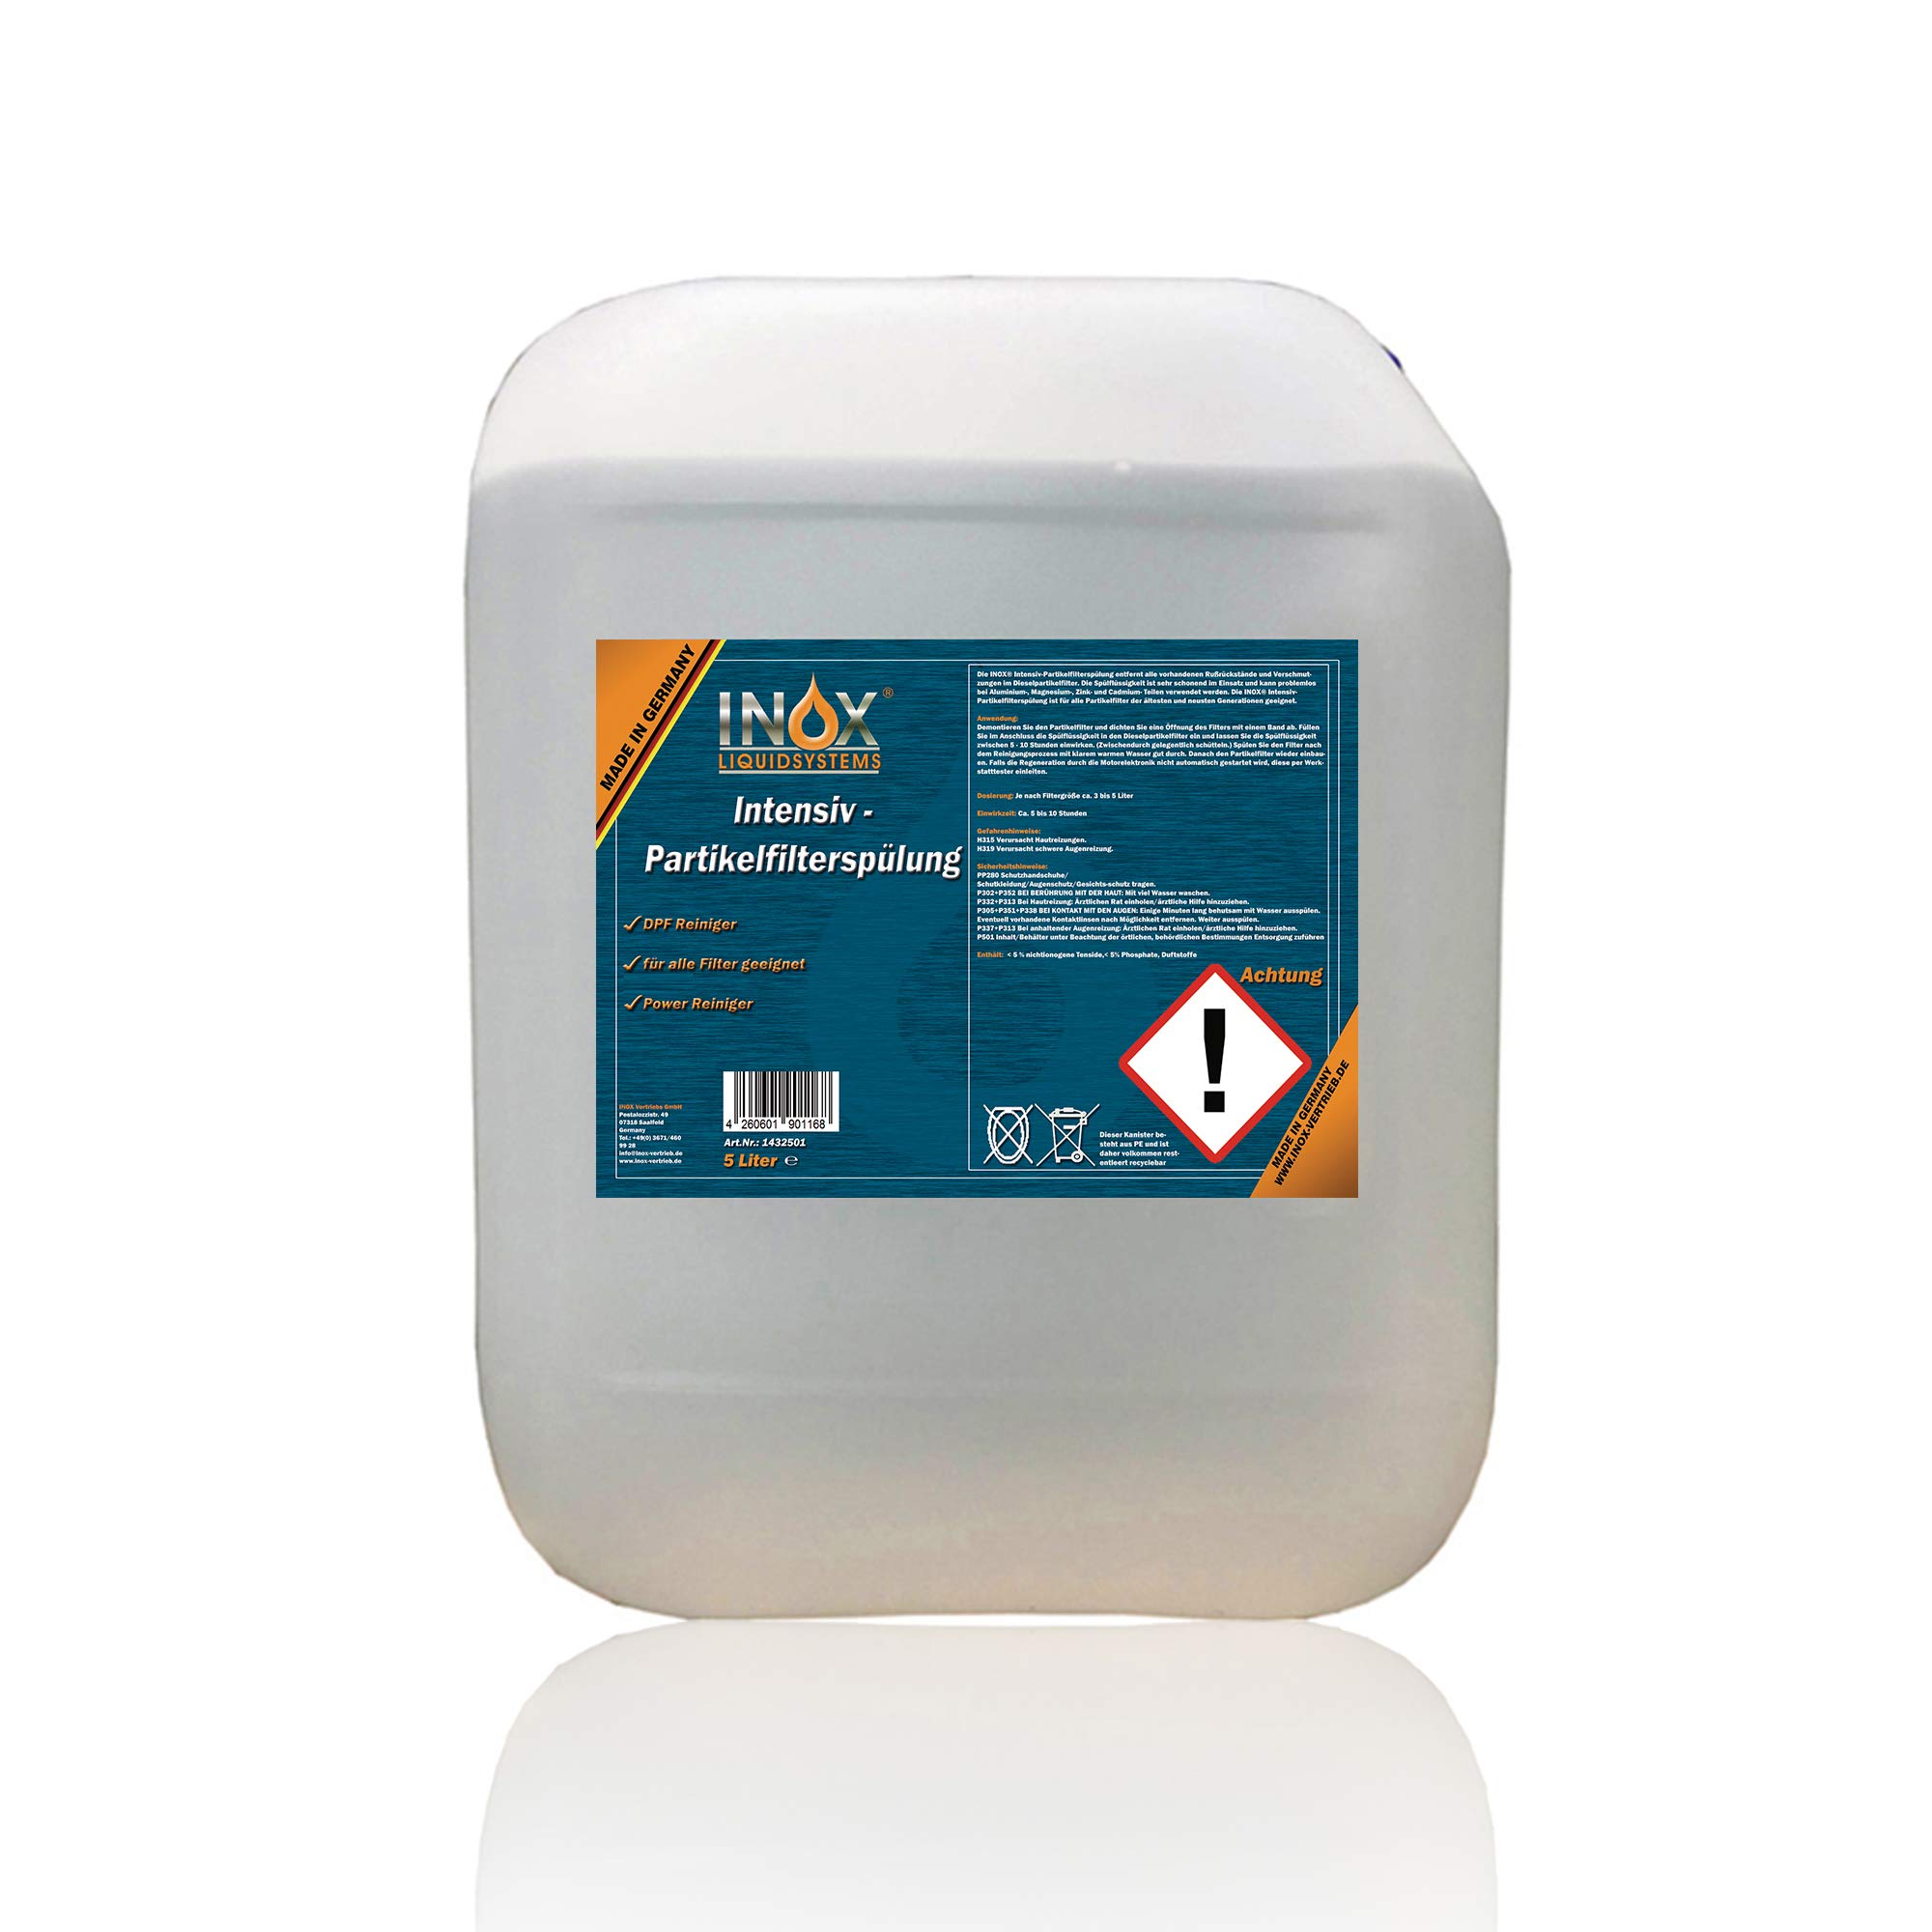 INOX® Intensiv Dieselpartikelfilter Spülung, 5L - Additiv für alle Dieselsysteme mit Partikelfilter